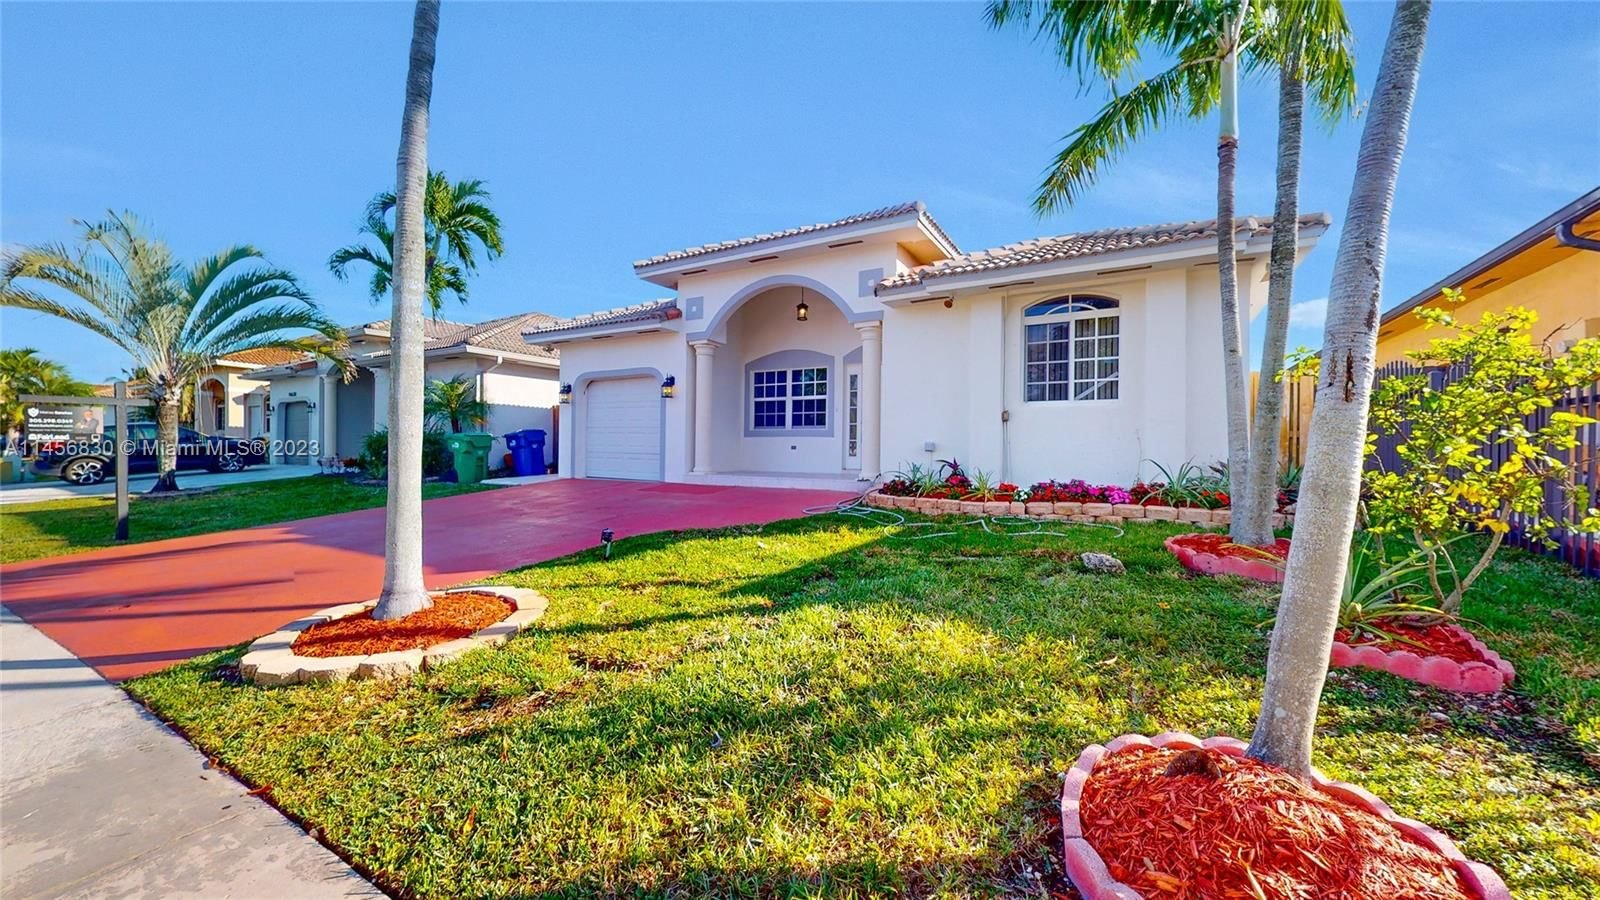 Real estate property located at 14640 180th St, Miami-Dade County, FC SUB, Miami, FL